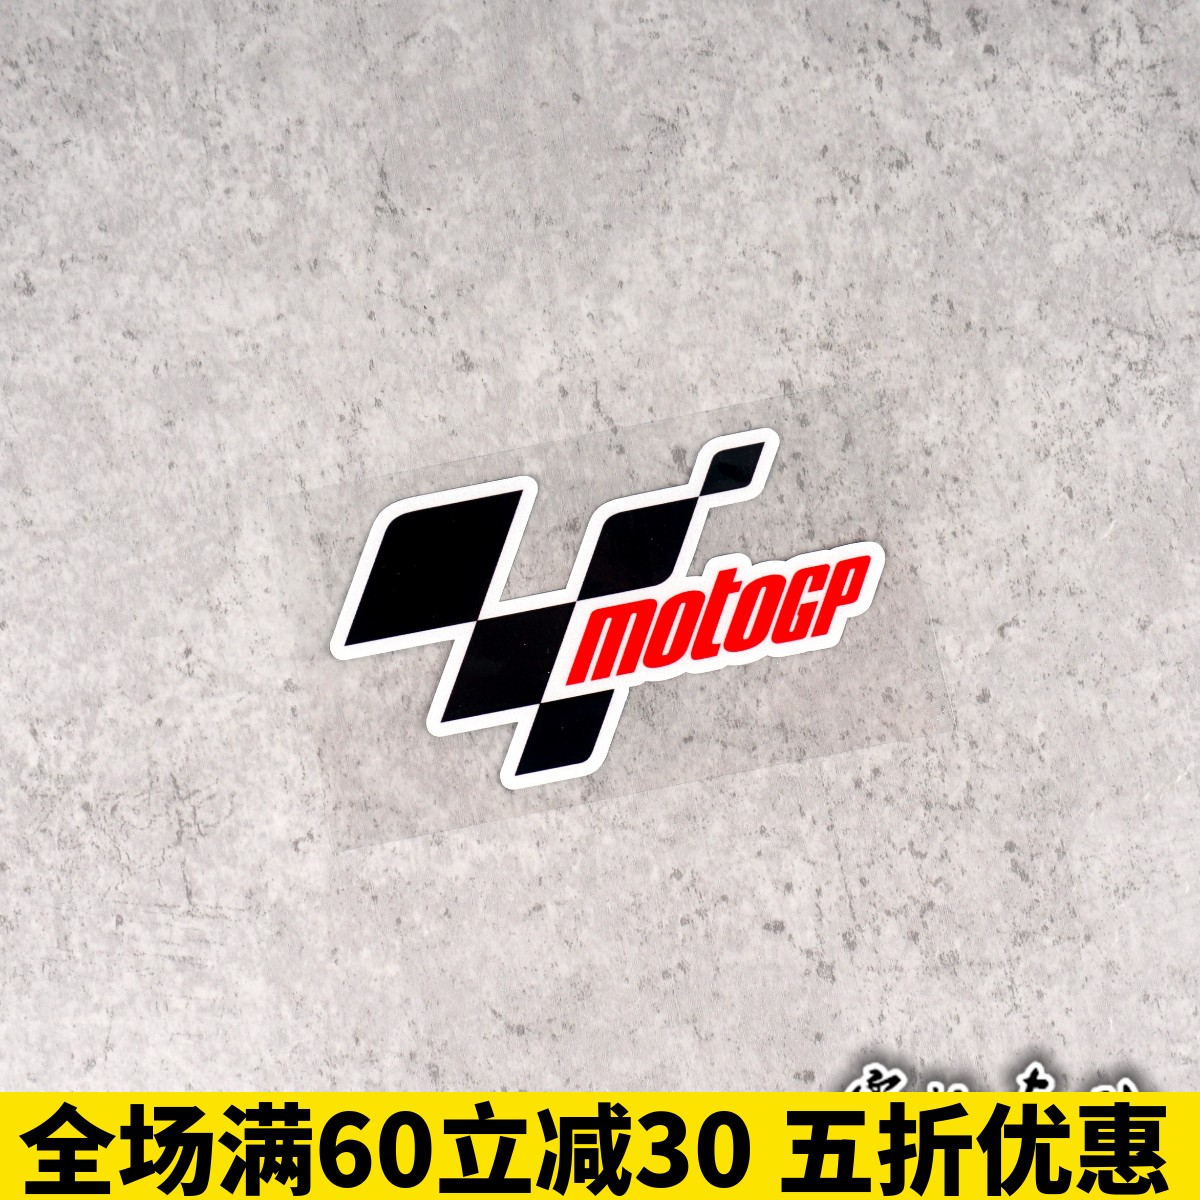 摩托GP 赞助贴纸 motogp比赛贴纸 赛车贴纸 车手比赛车身贴